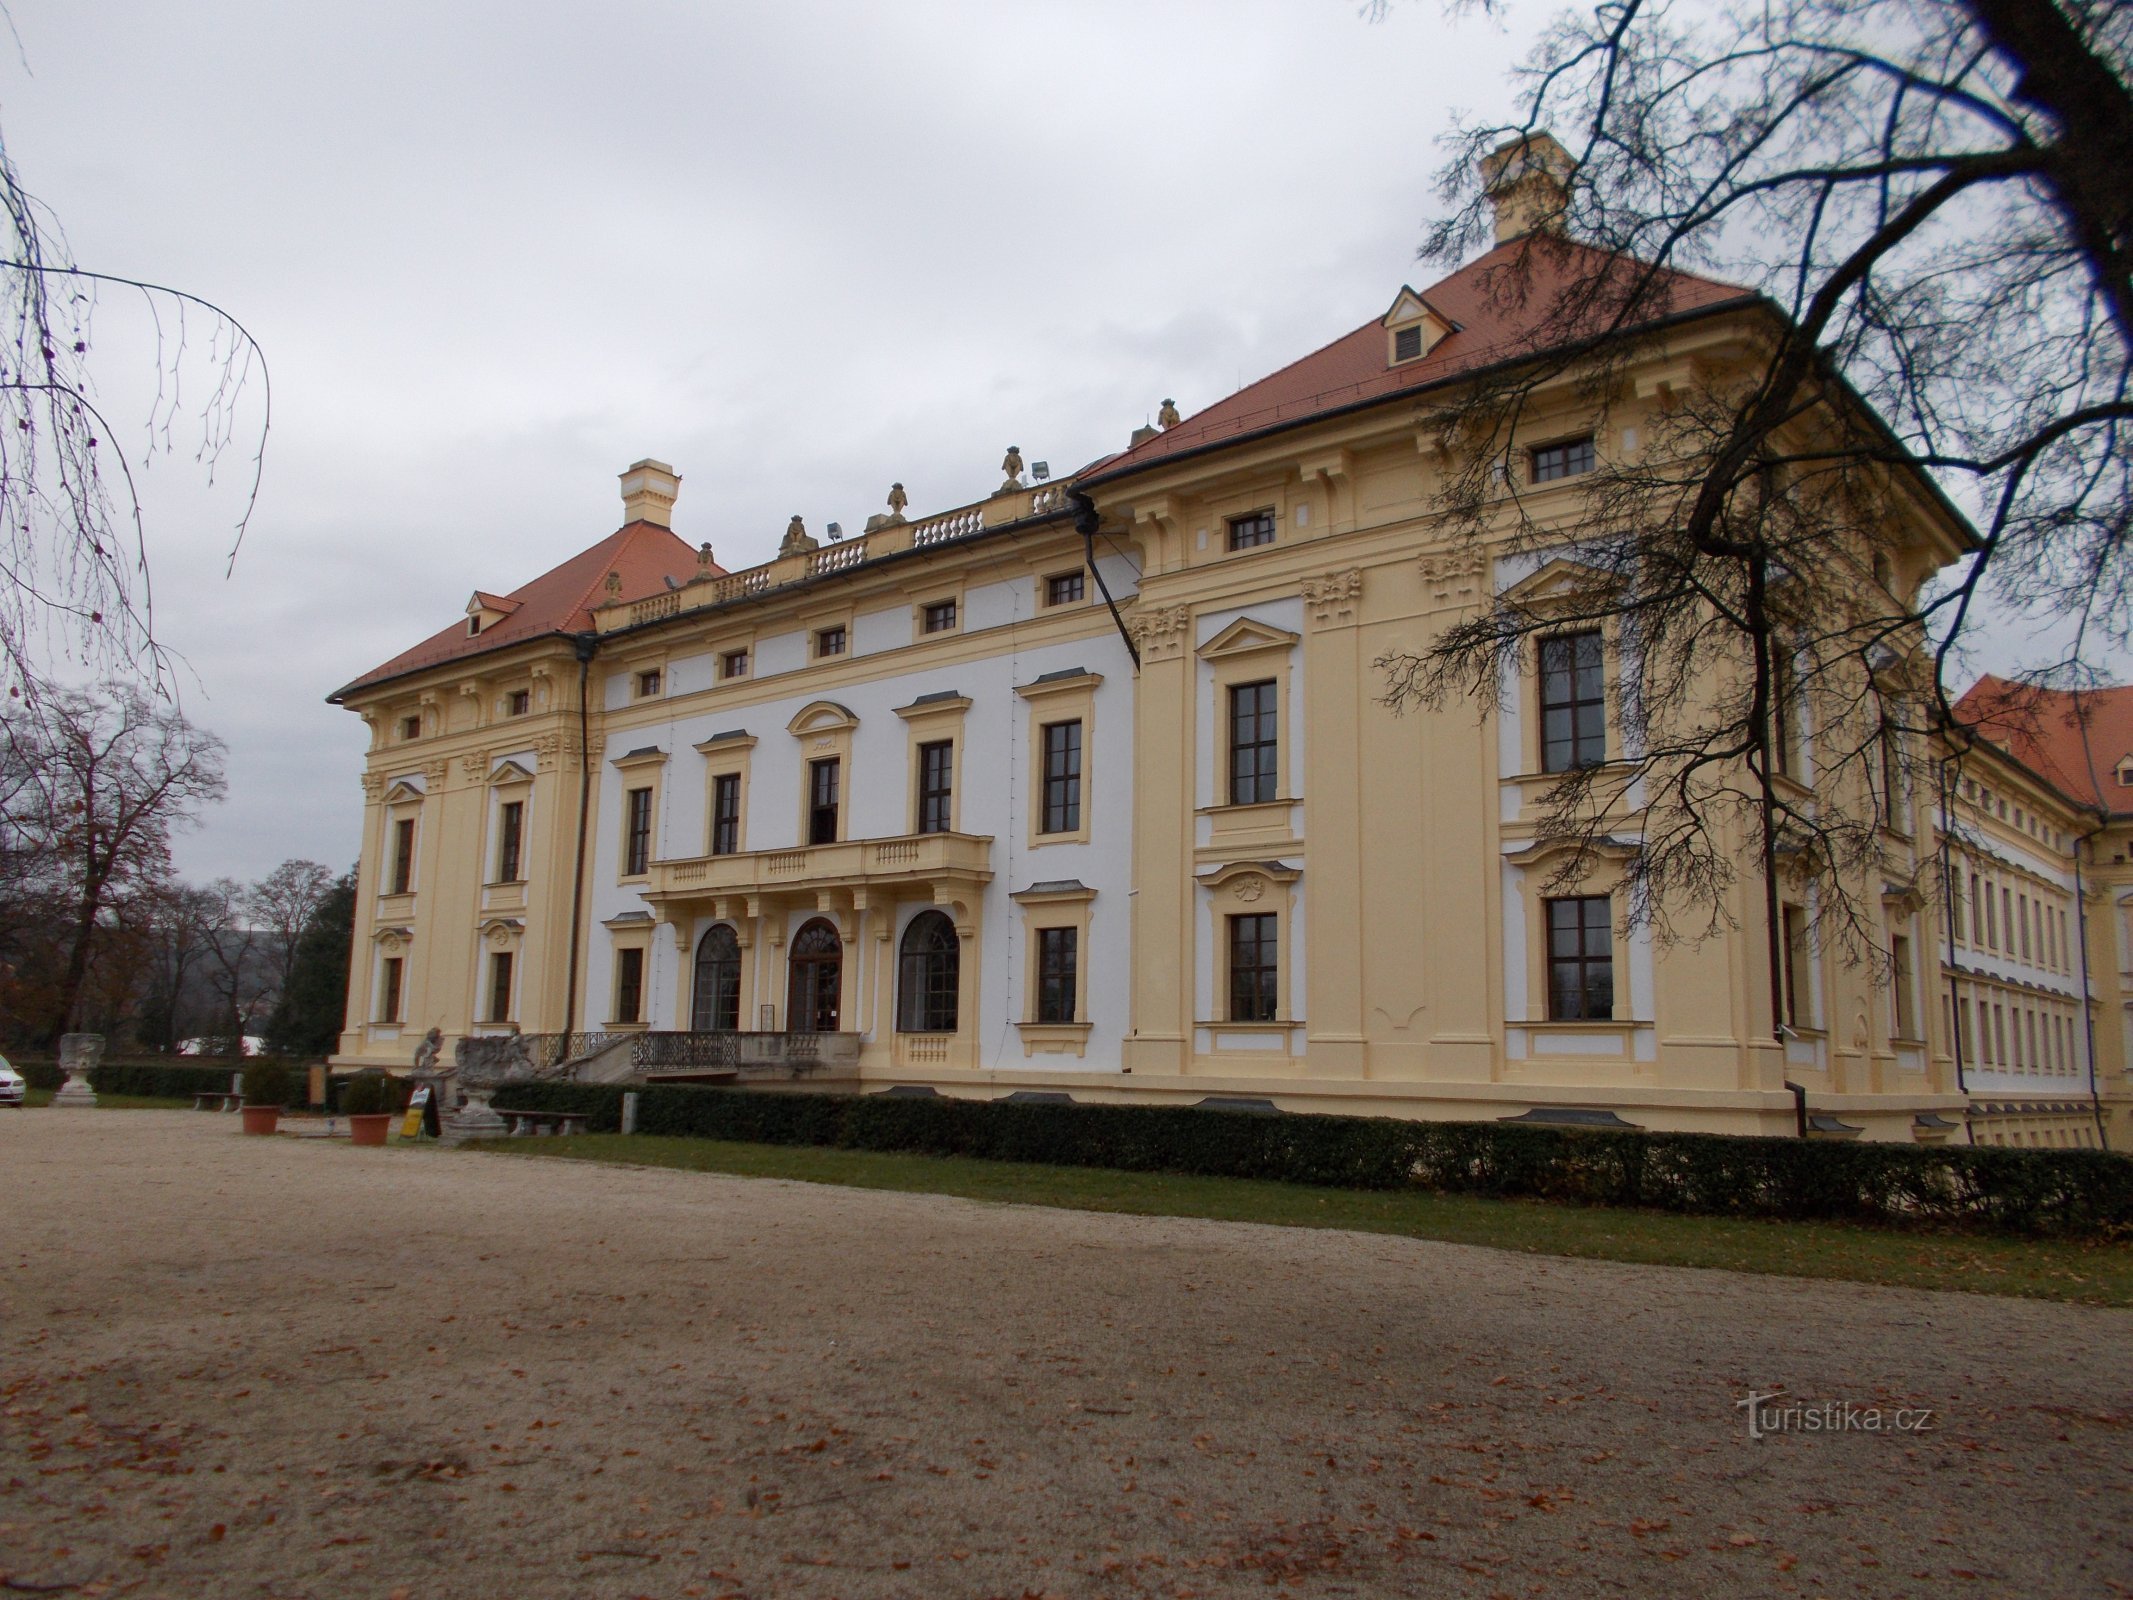 Castle Slavkov